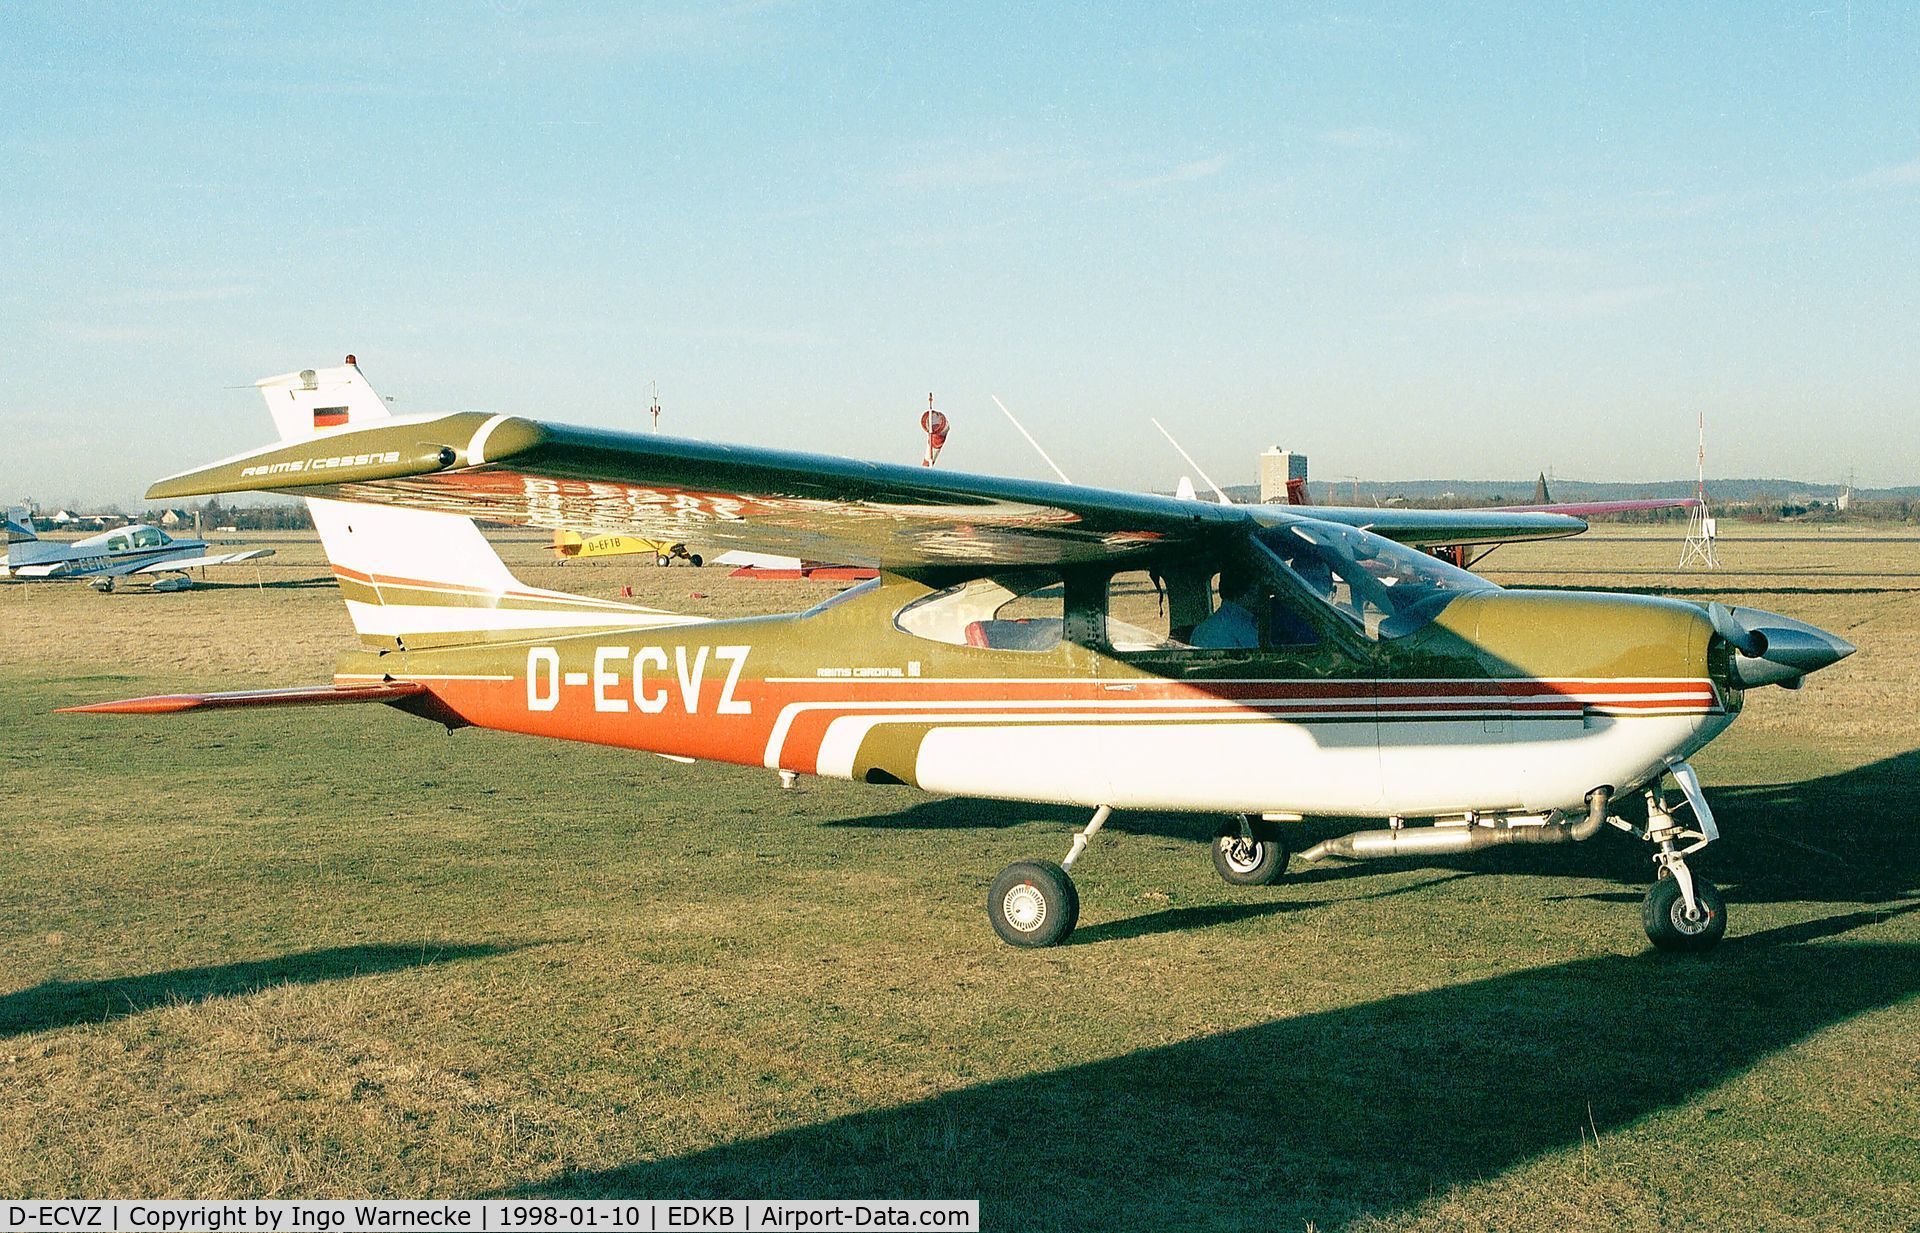 D-ECVZ, Reims F177RG Cardinal RG C/N 0074, Cessna (Reims) F177RG Cardinal RG at Bonn-Hangelar airfield